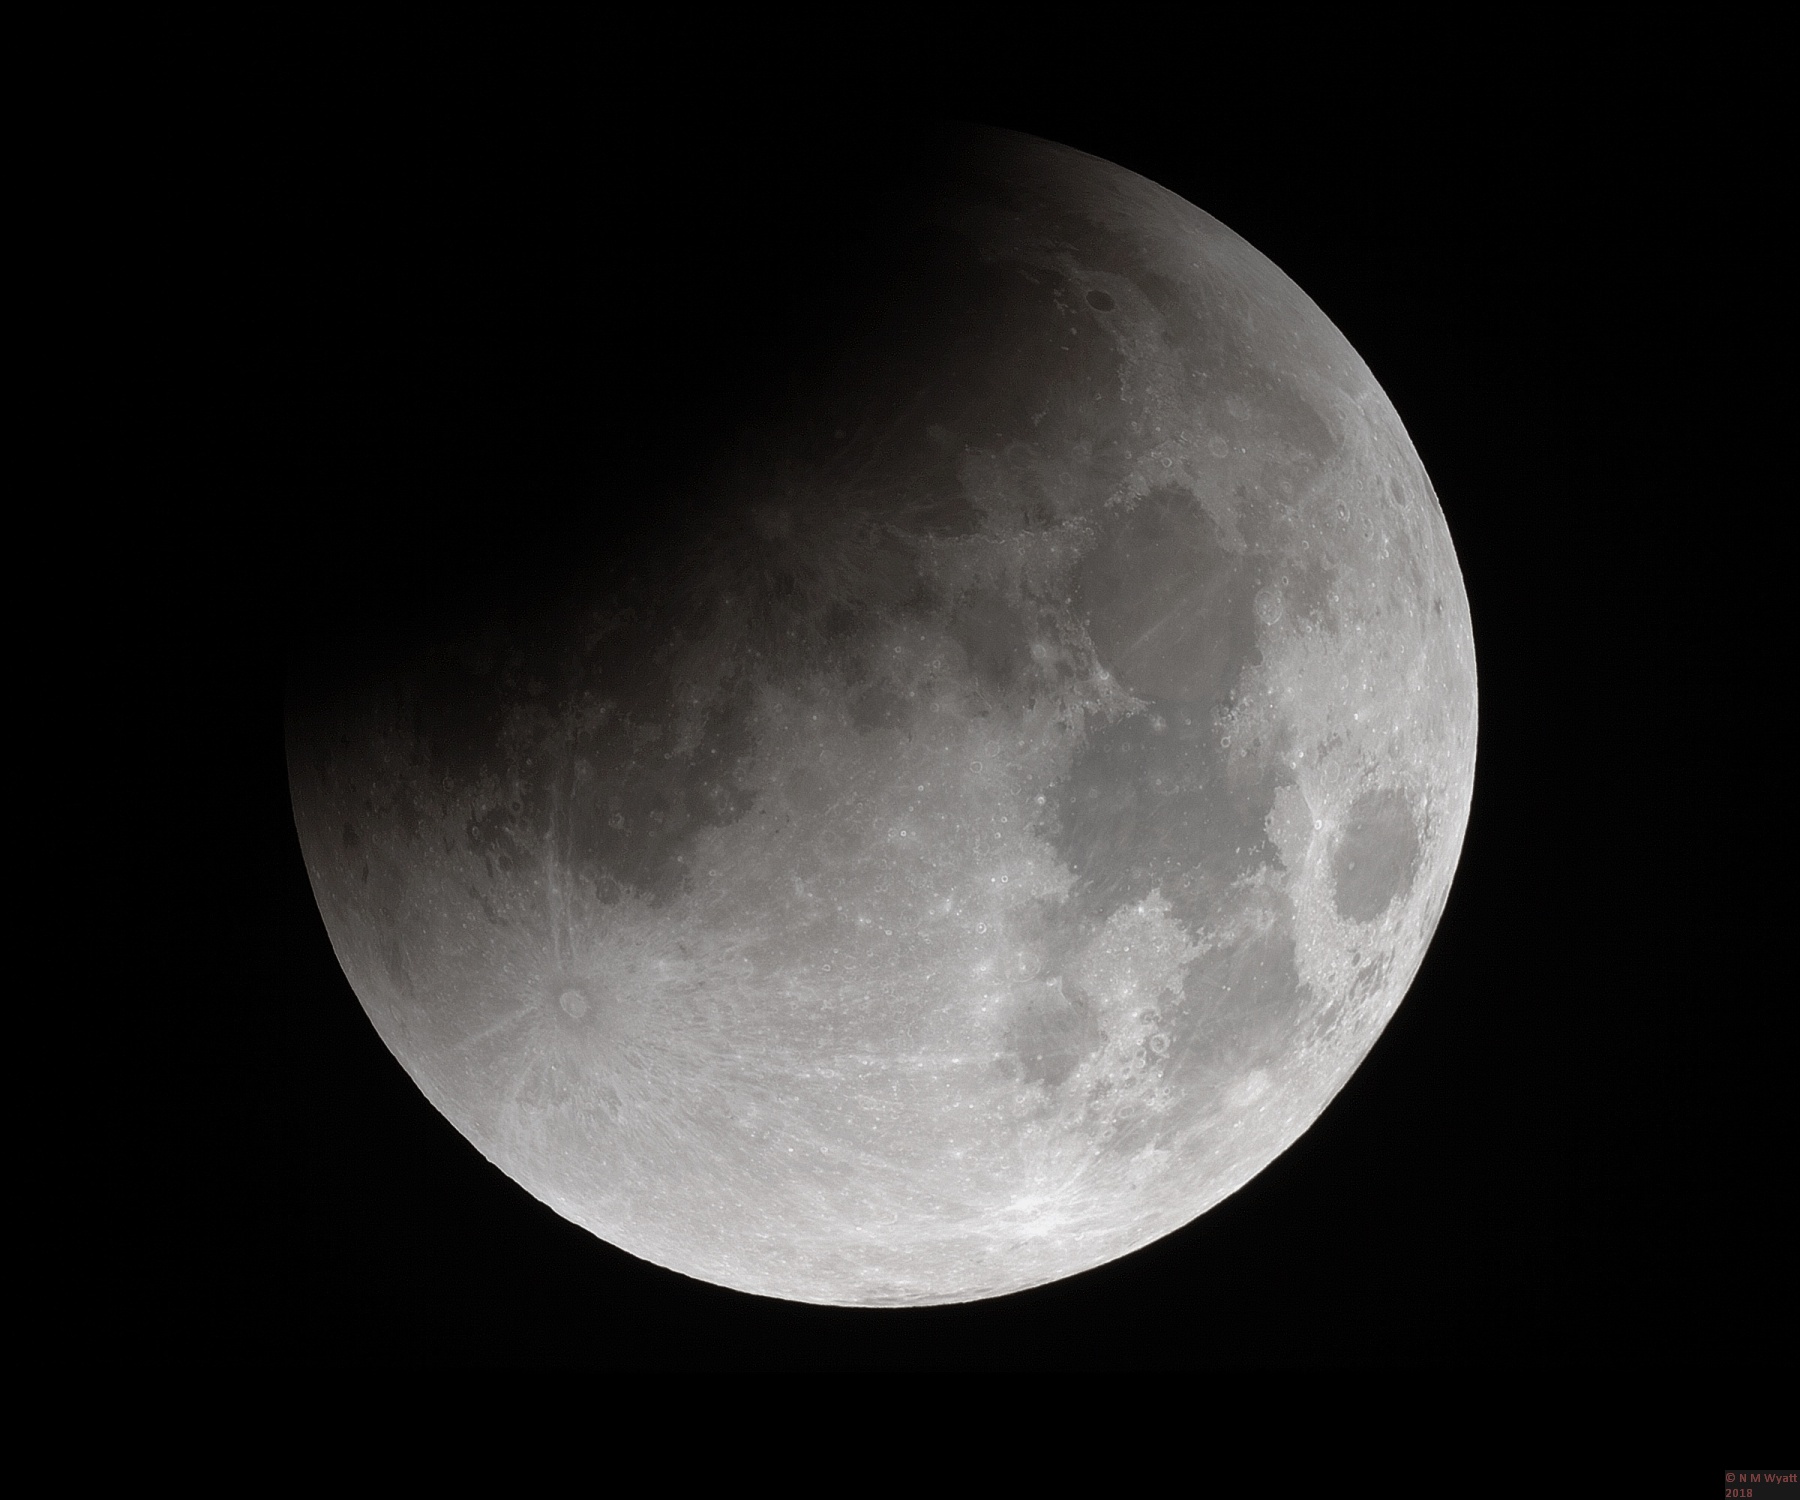 Progress of a Lunar Eclipse